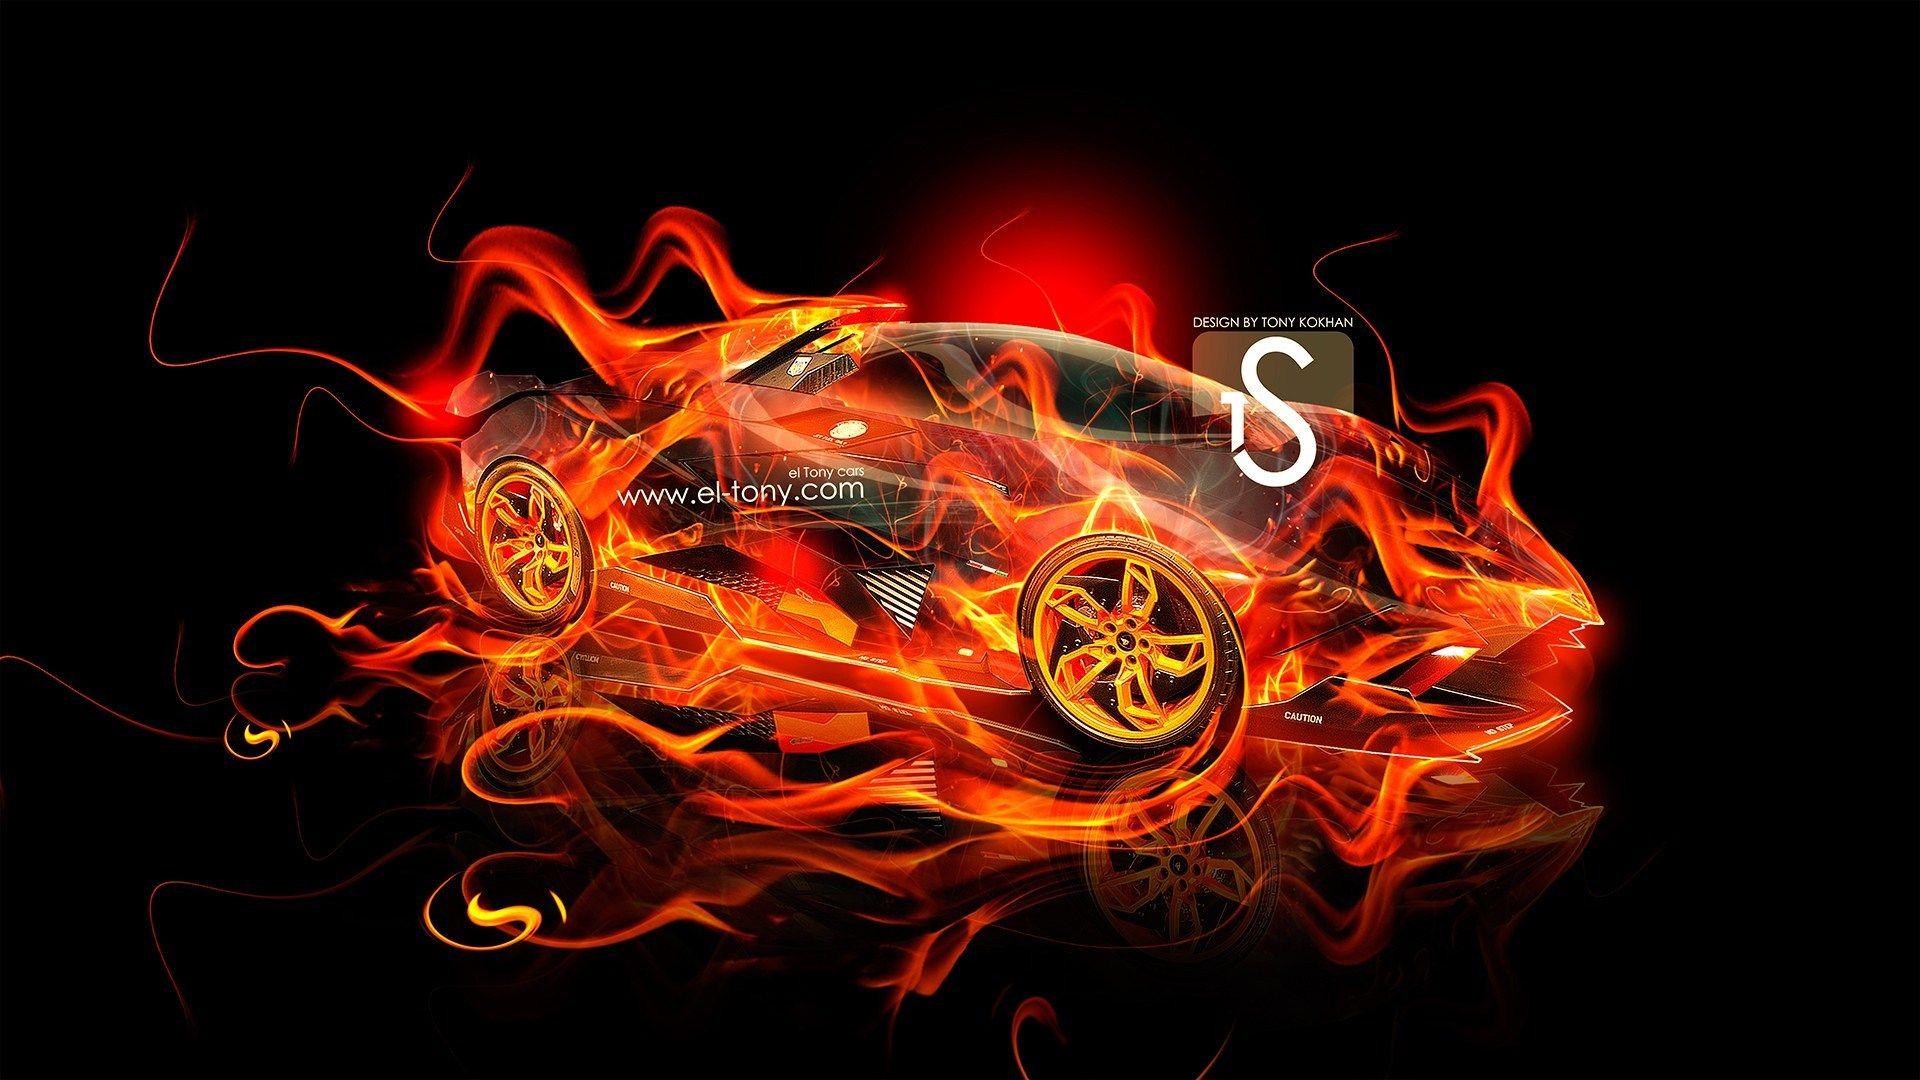 Lamborghini On Fire Wallpapers - Top Free Lamborghini On Fire